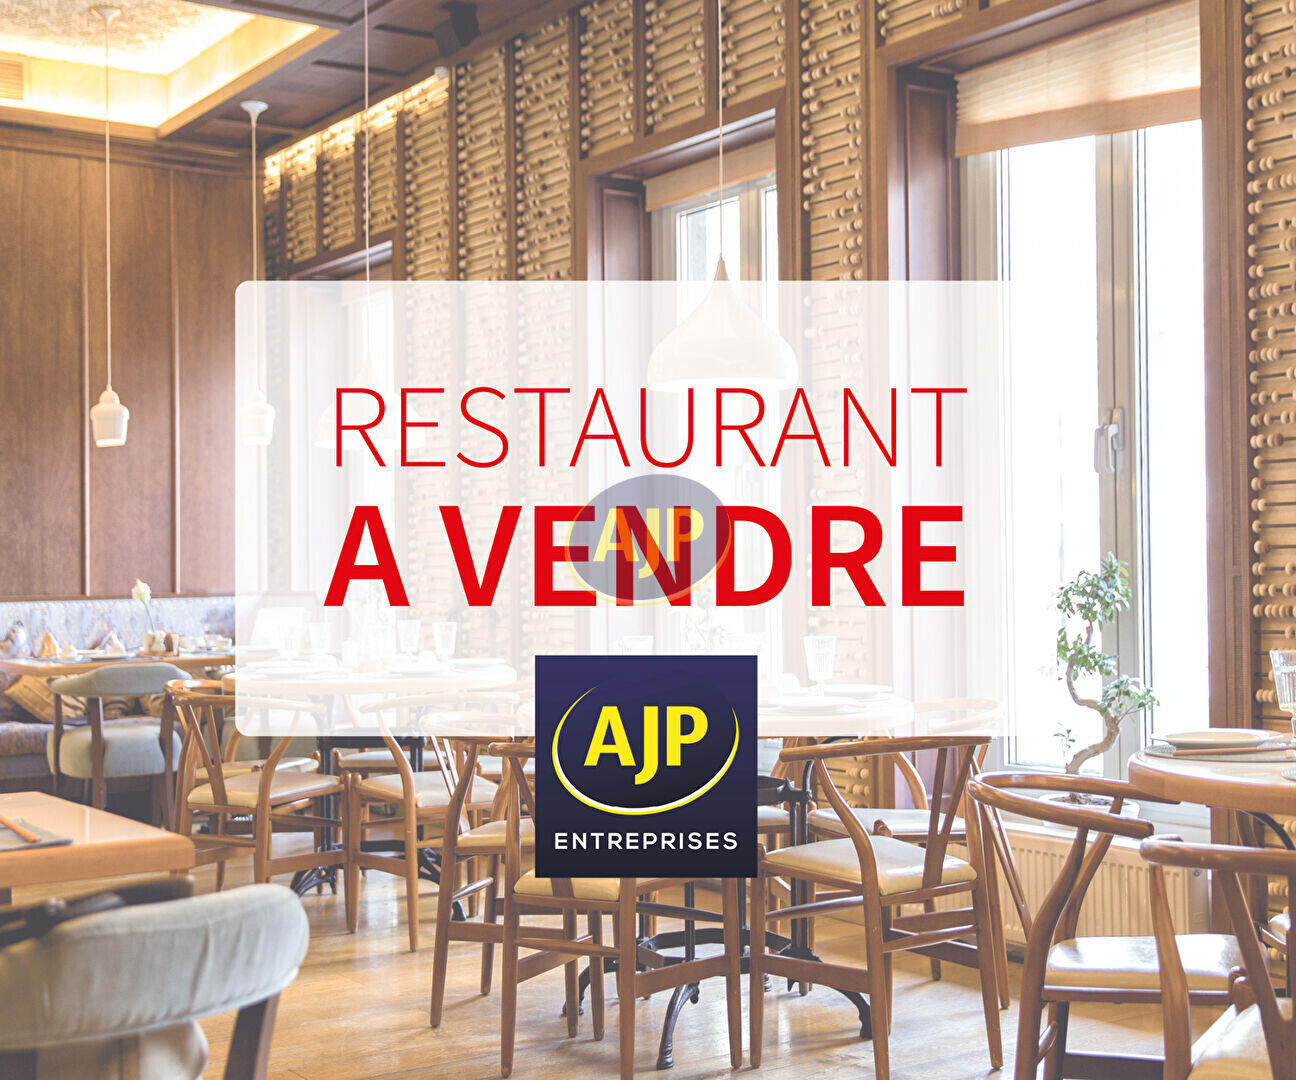 A vendre restaurant brasserie en Loire Atlantique